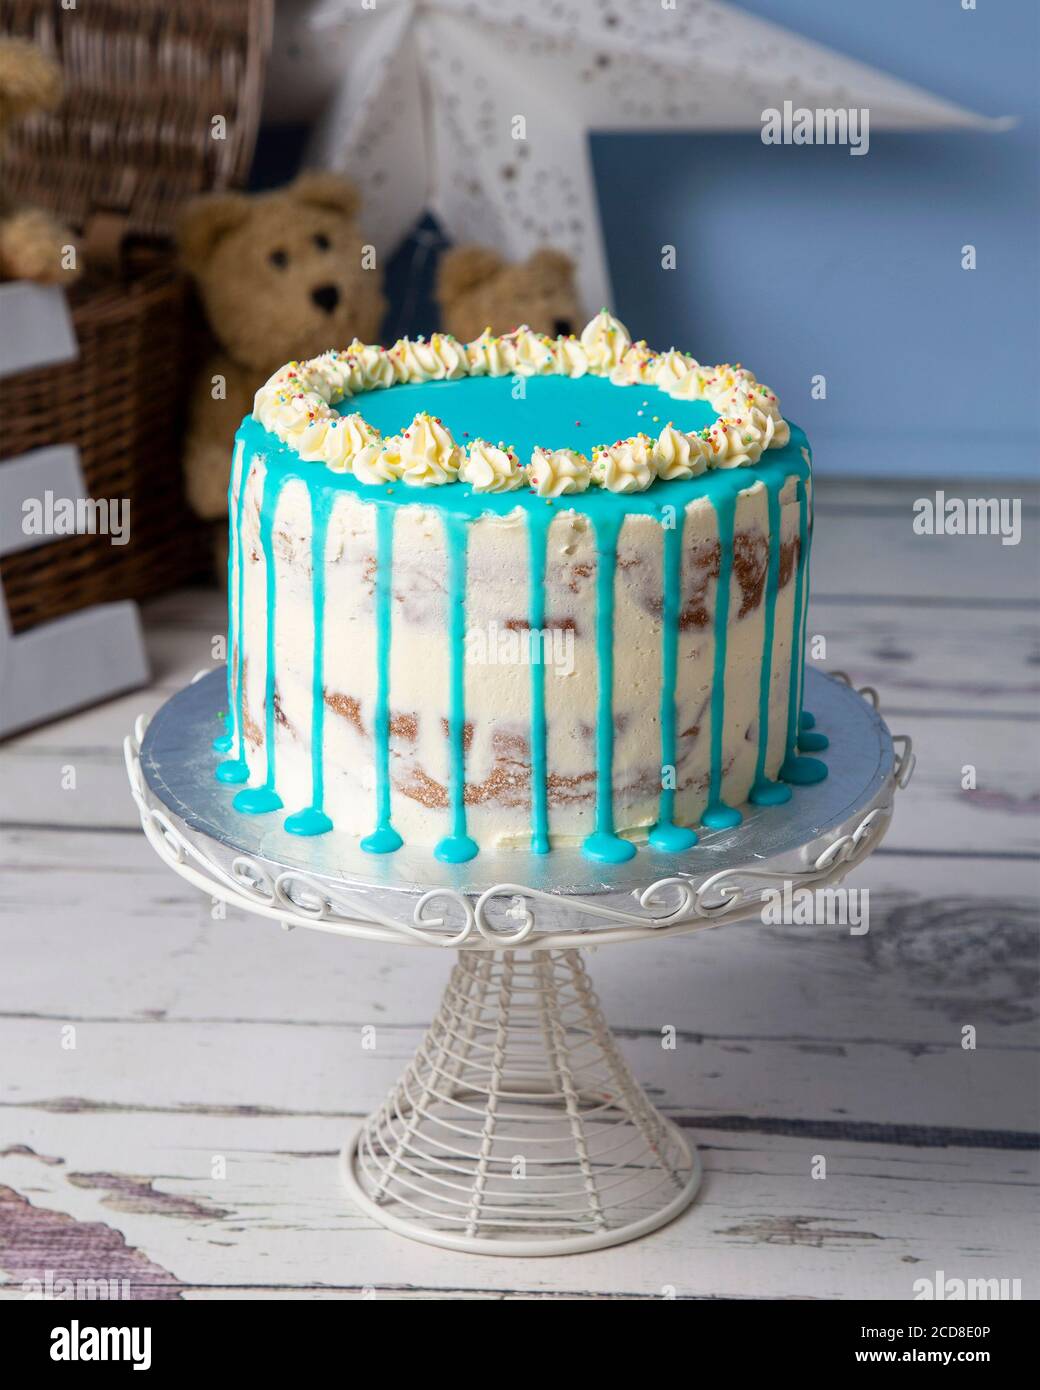 Celebration cakes Stock Photo